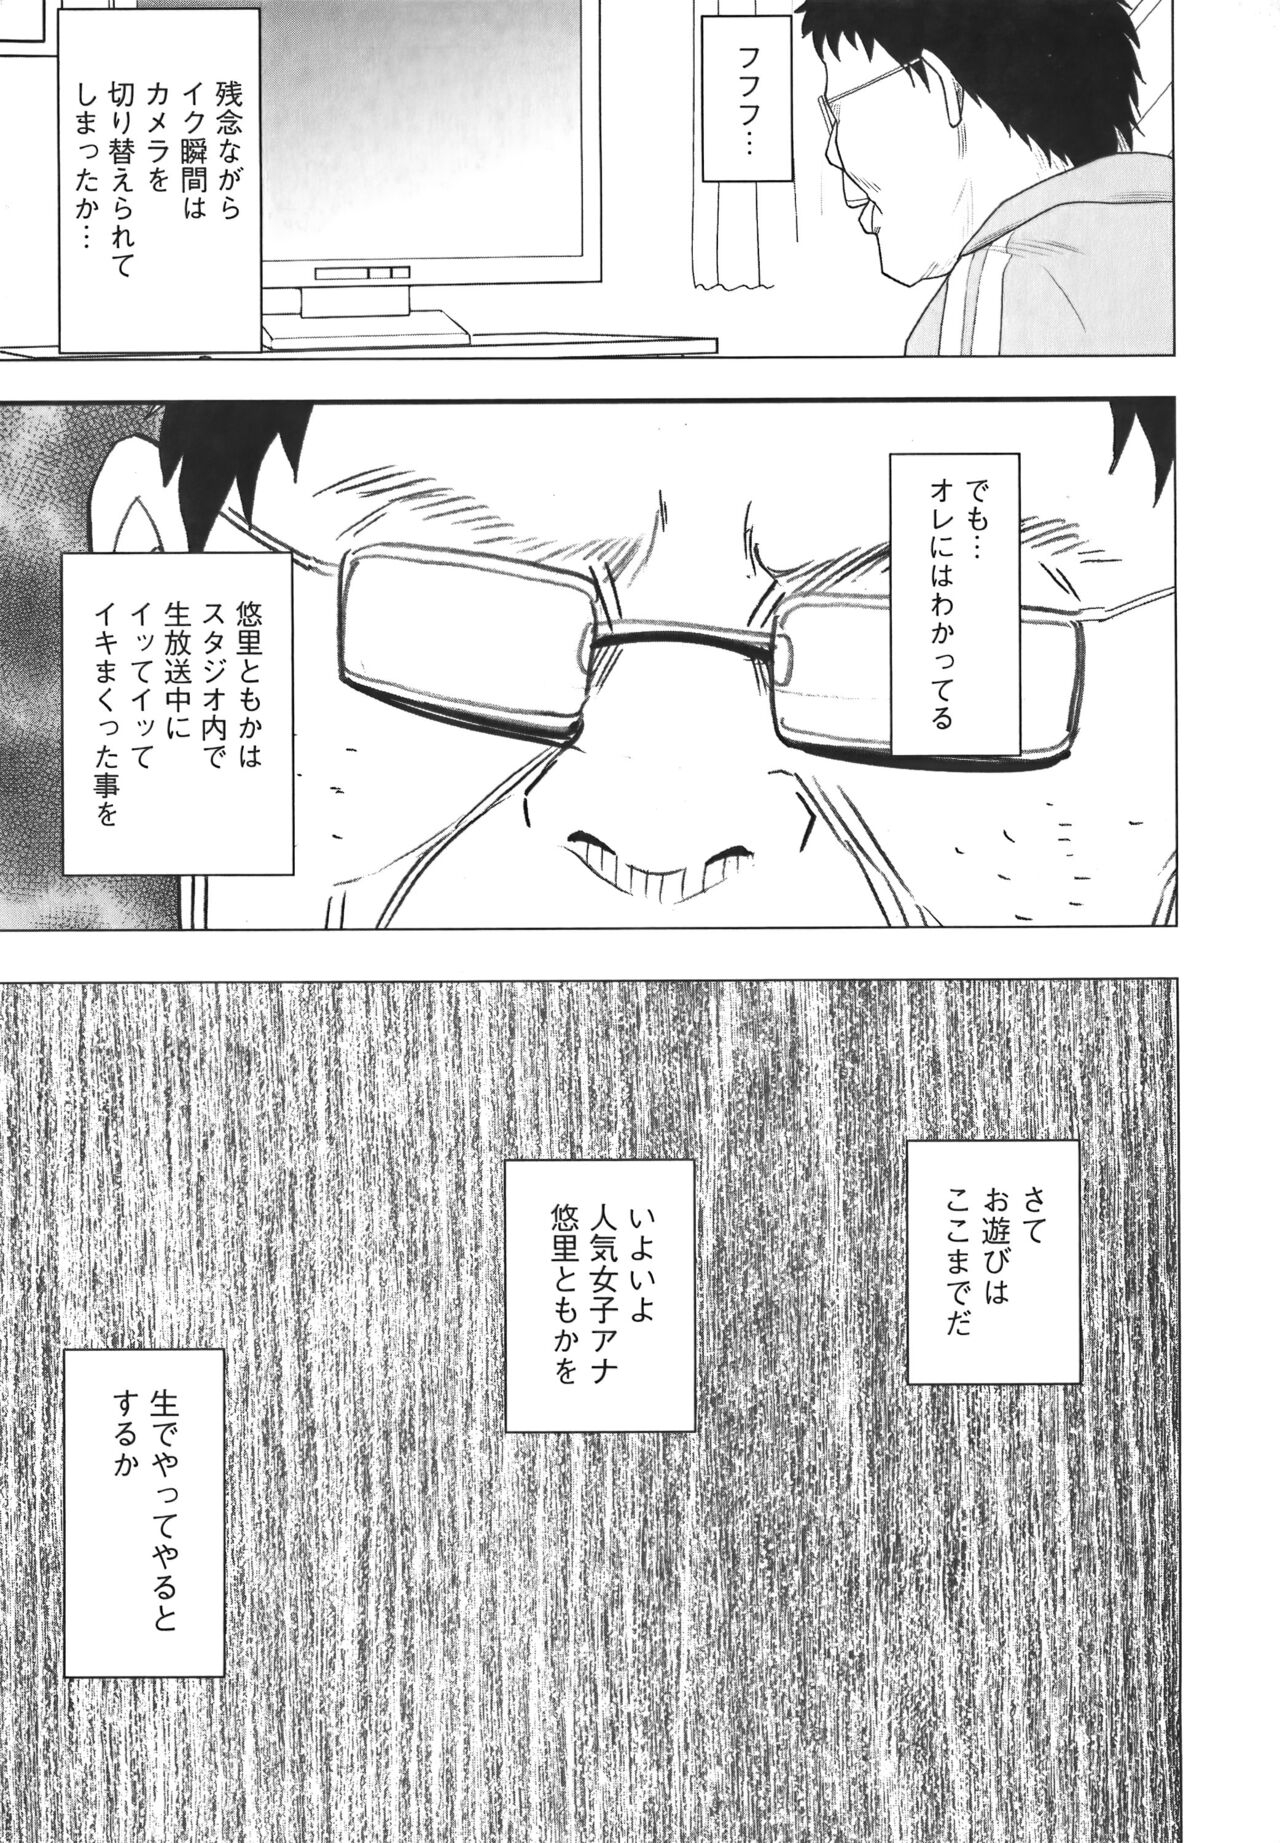 [Crimson] Idol Kyousei Sousa Vol.1 Smartphone de Meireishita Koto ga Genjitsu ni [Complete Edition] 114